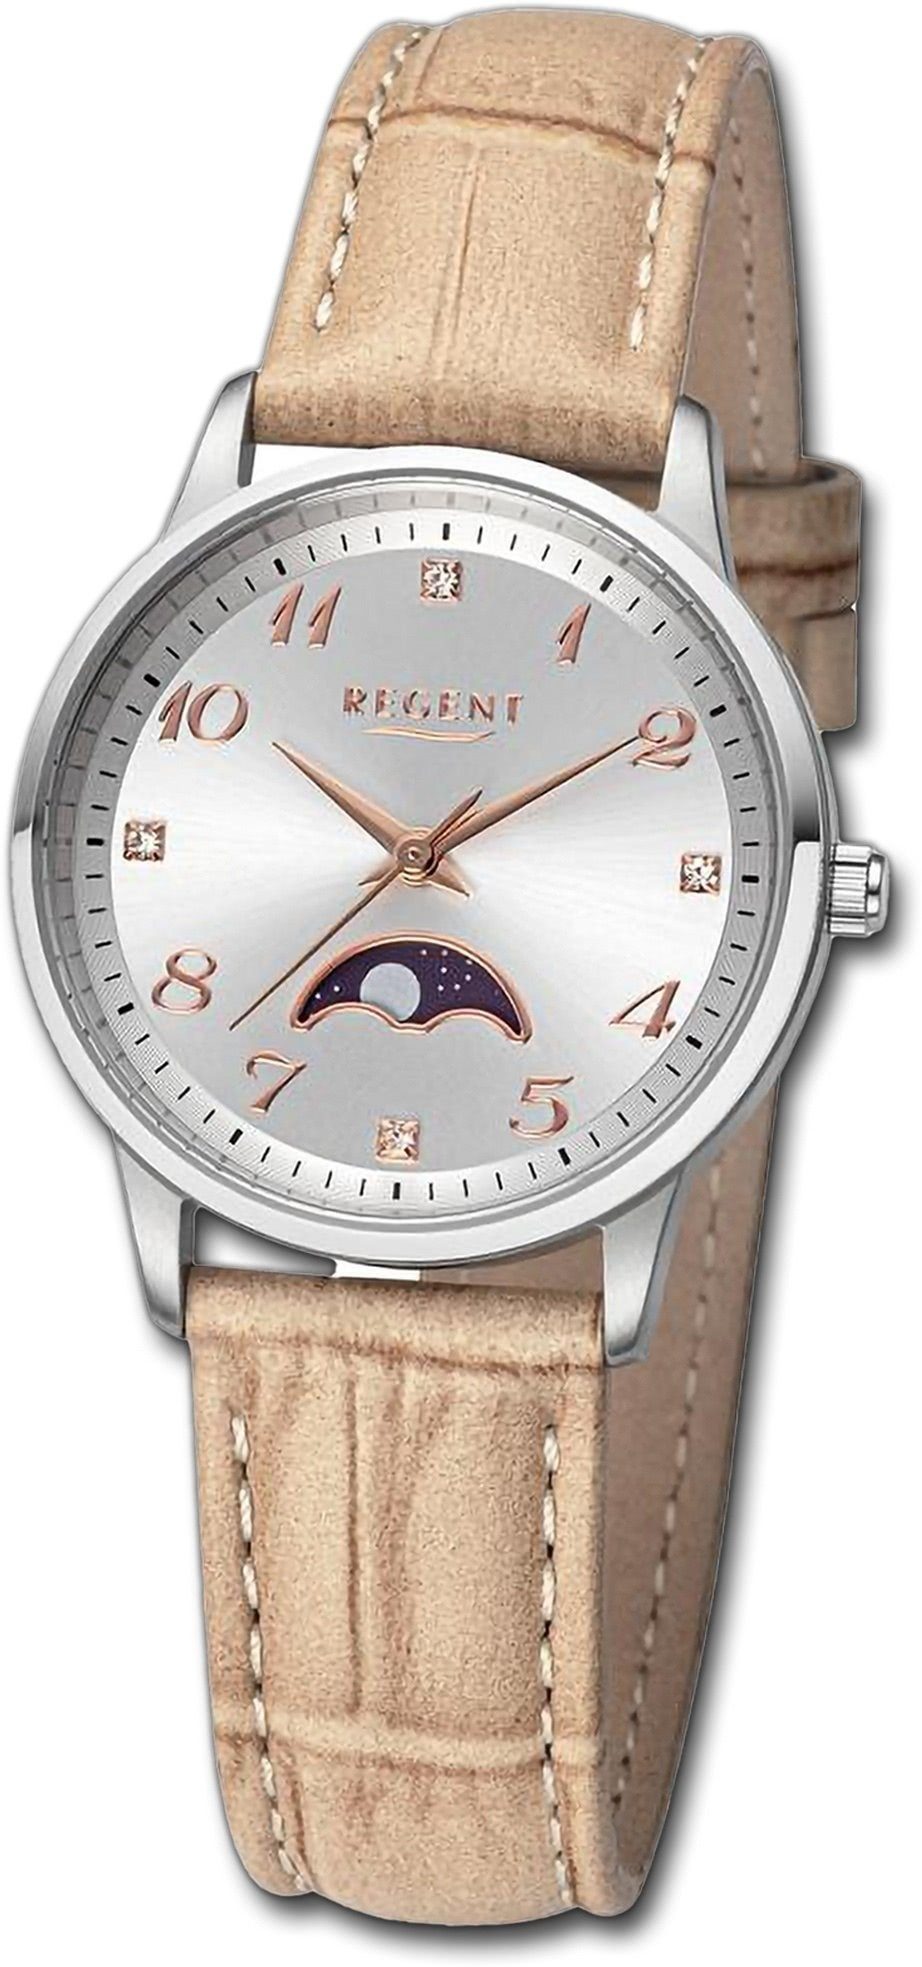 Regent Quarzuhr Regent Damen Armbanduhr Analog, Damenuhr Lederarmband hellbraun, rundes Gehäuse, groß (ca. 31,5mm)